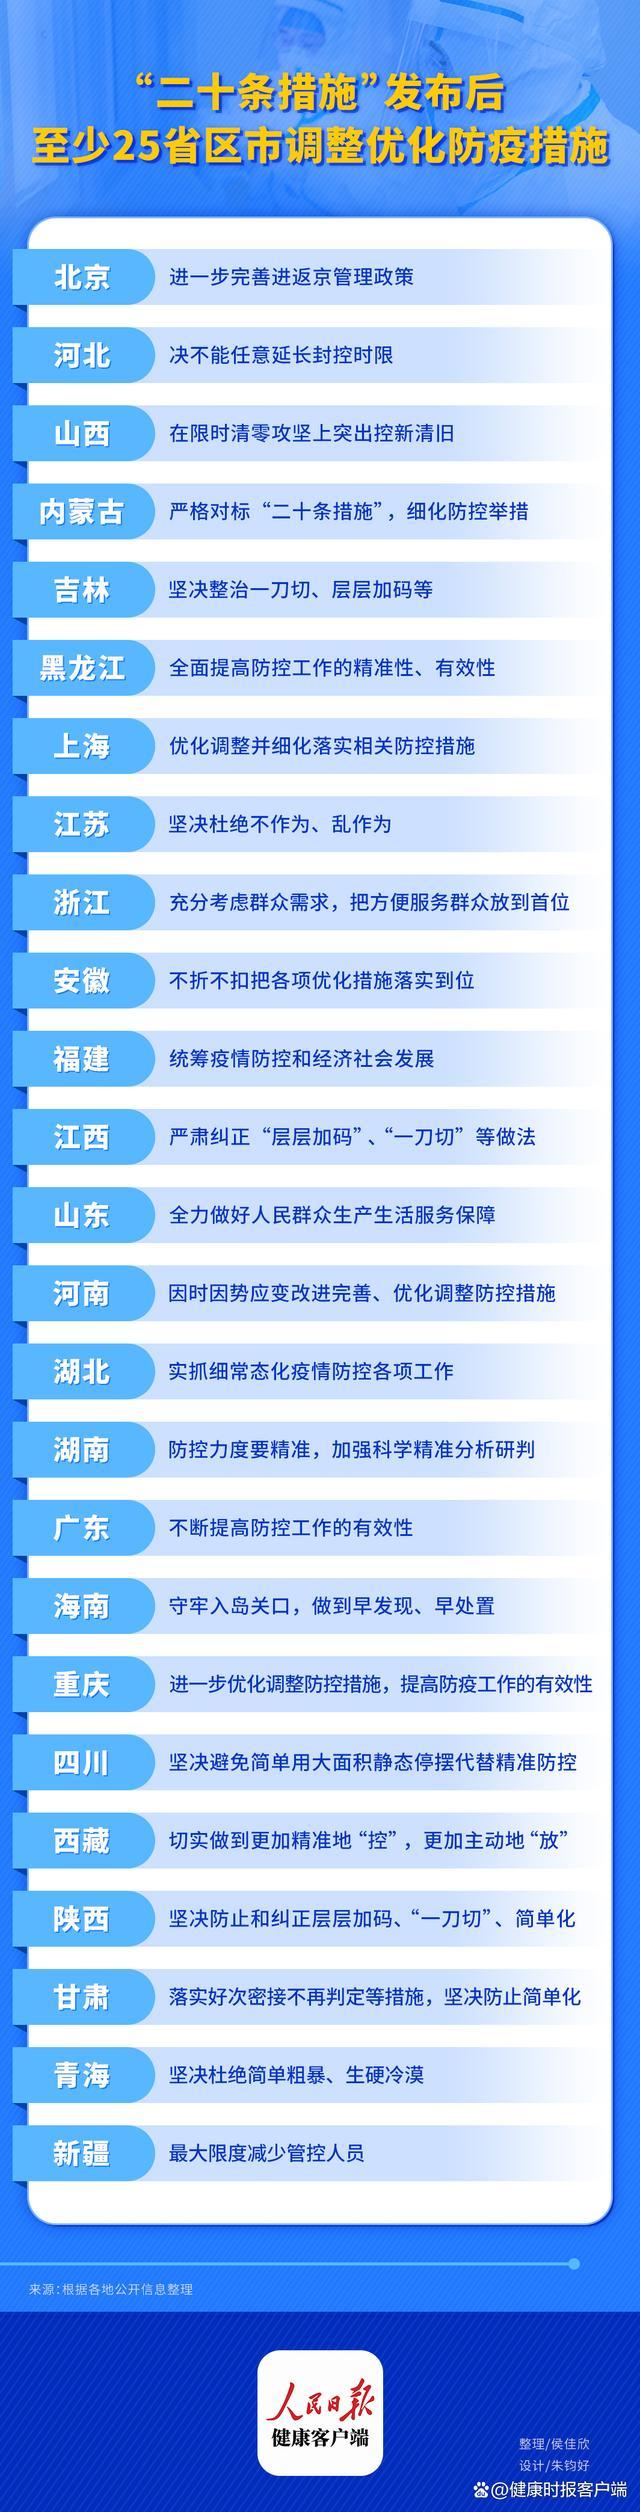 北京卫健委:接到流调电话 请如实报告个人活动轨迹 - Bing Search - 百度热点 百度热点快讯